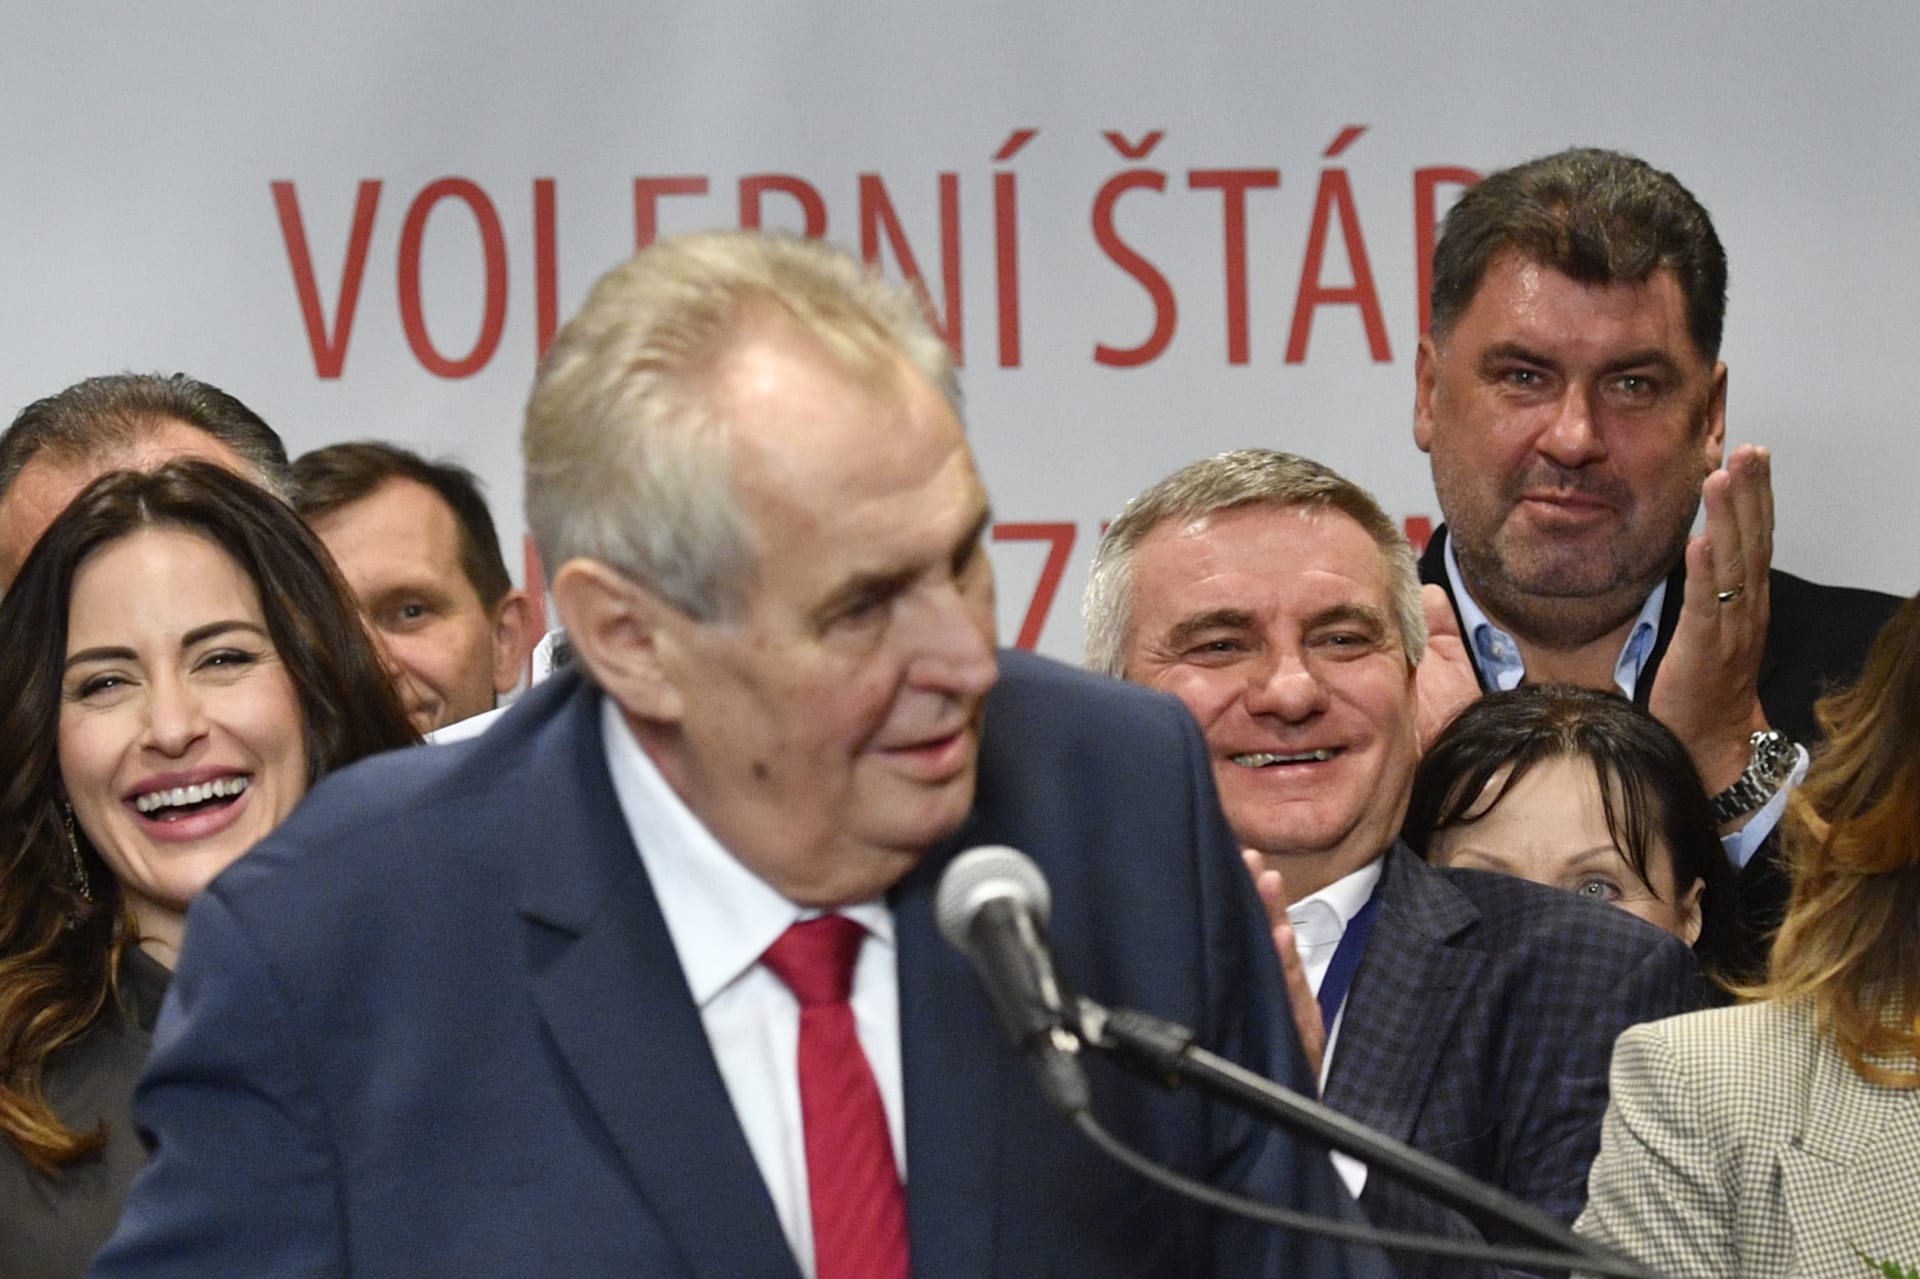 2018: Volební štáb Miloše Zemana, na pozadí Martin Nejedlý (vpravo) a Vratislav Mynář (uprostřed).